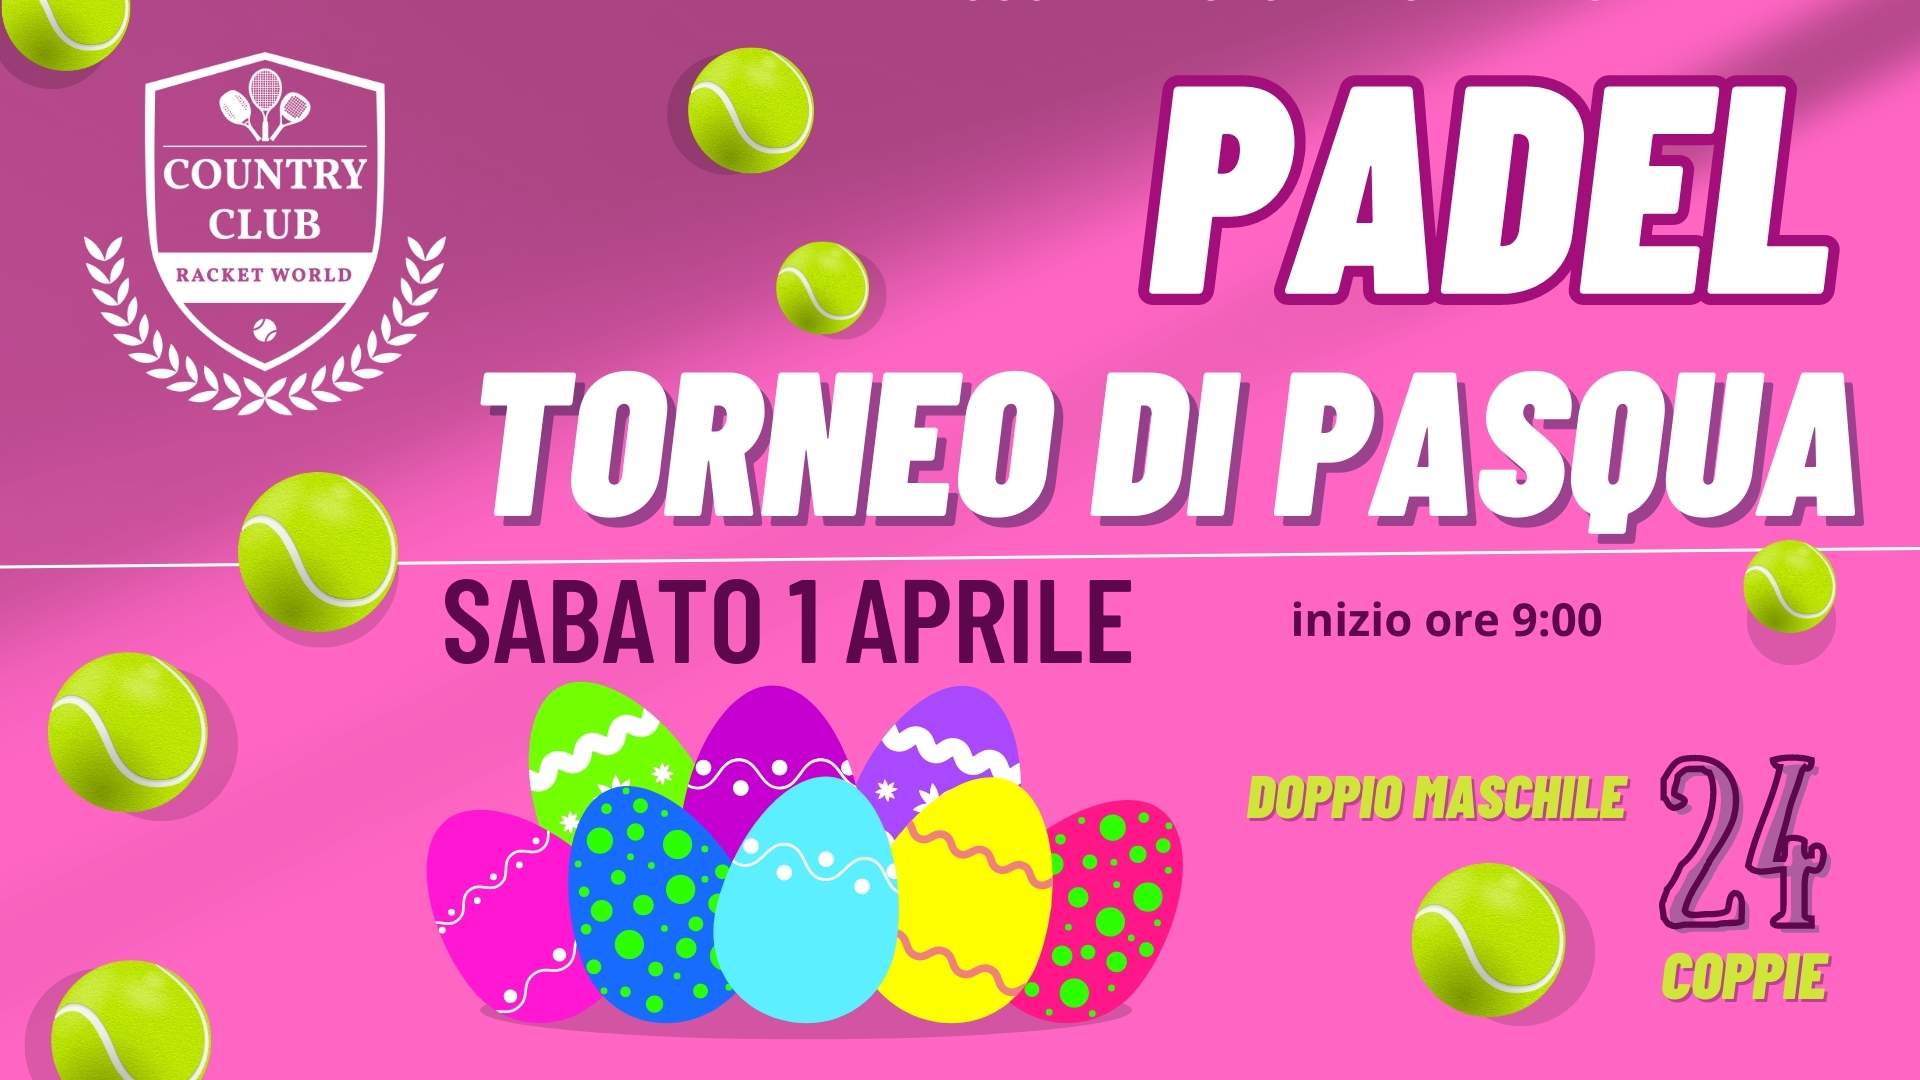 TORNEO PADEL di PASQUA | Country Club Bologna